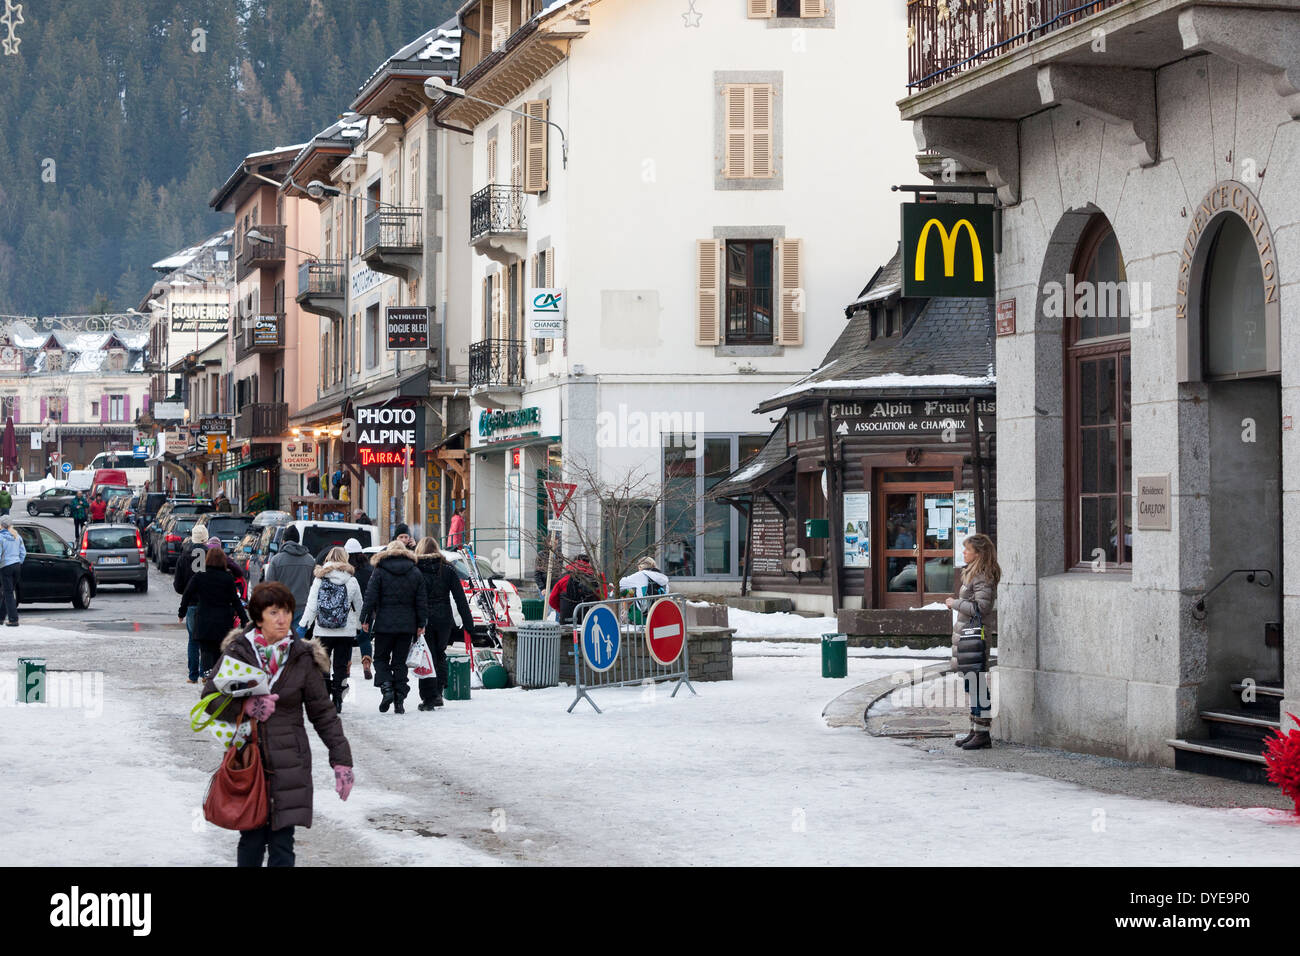 Il McDonalds fast food in franchising nel villaggio di Chamonix Mont Blanc. Foto Stock